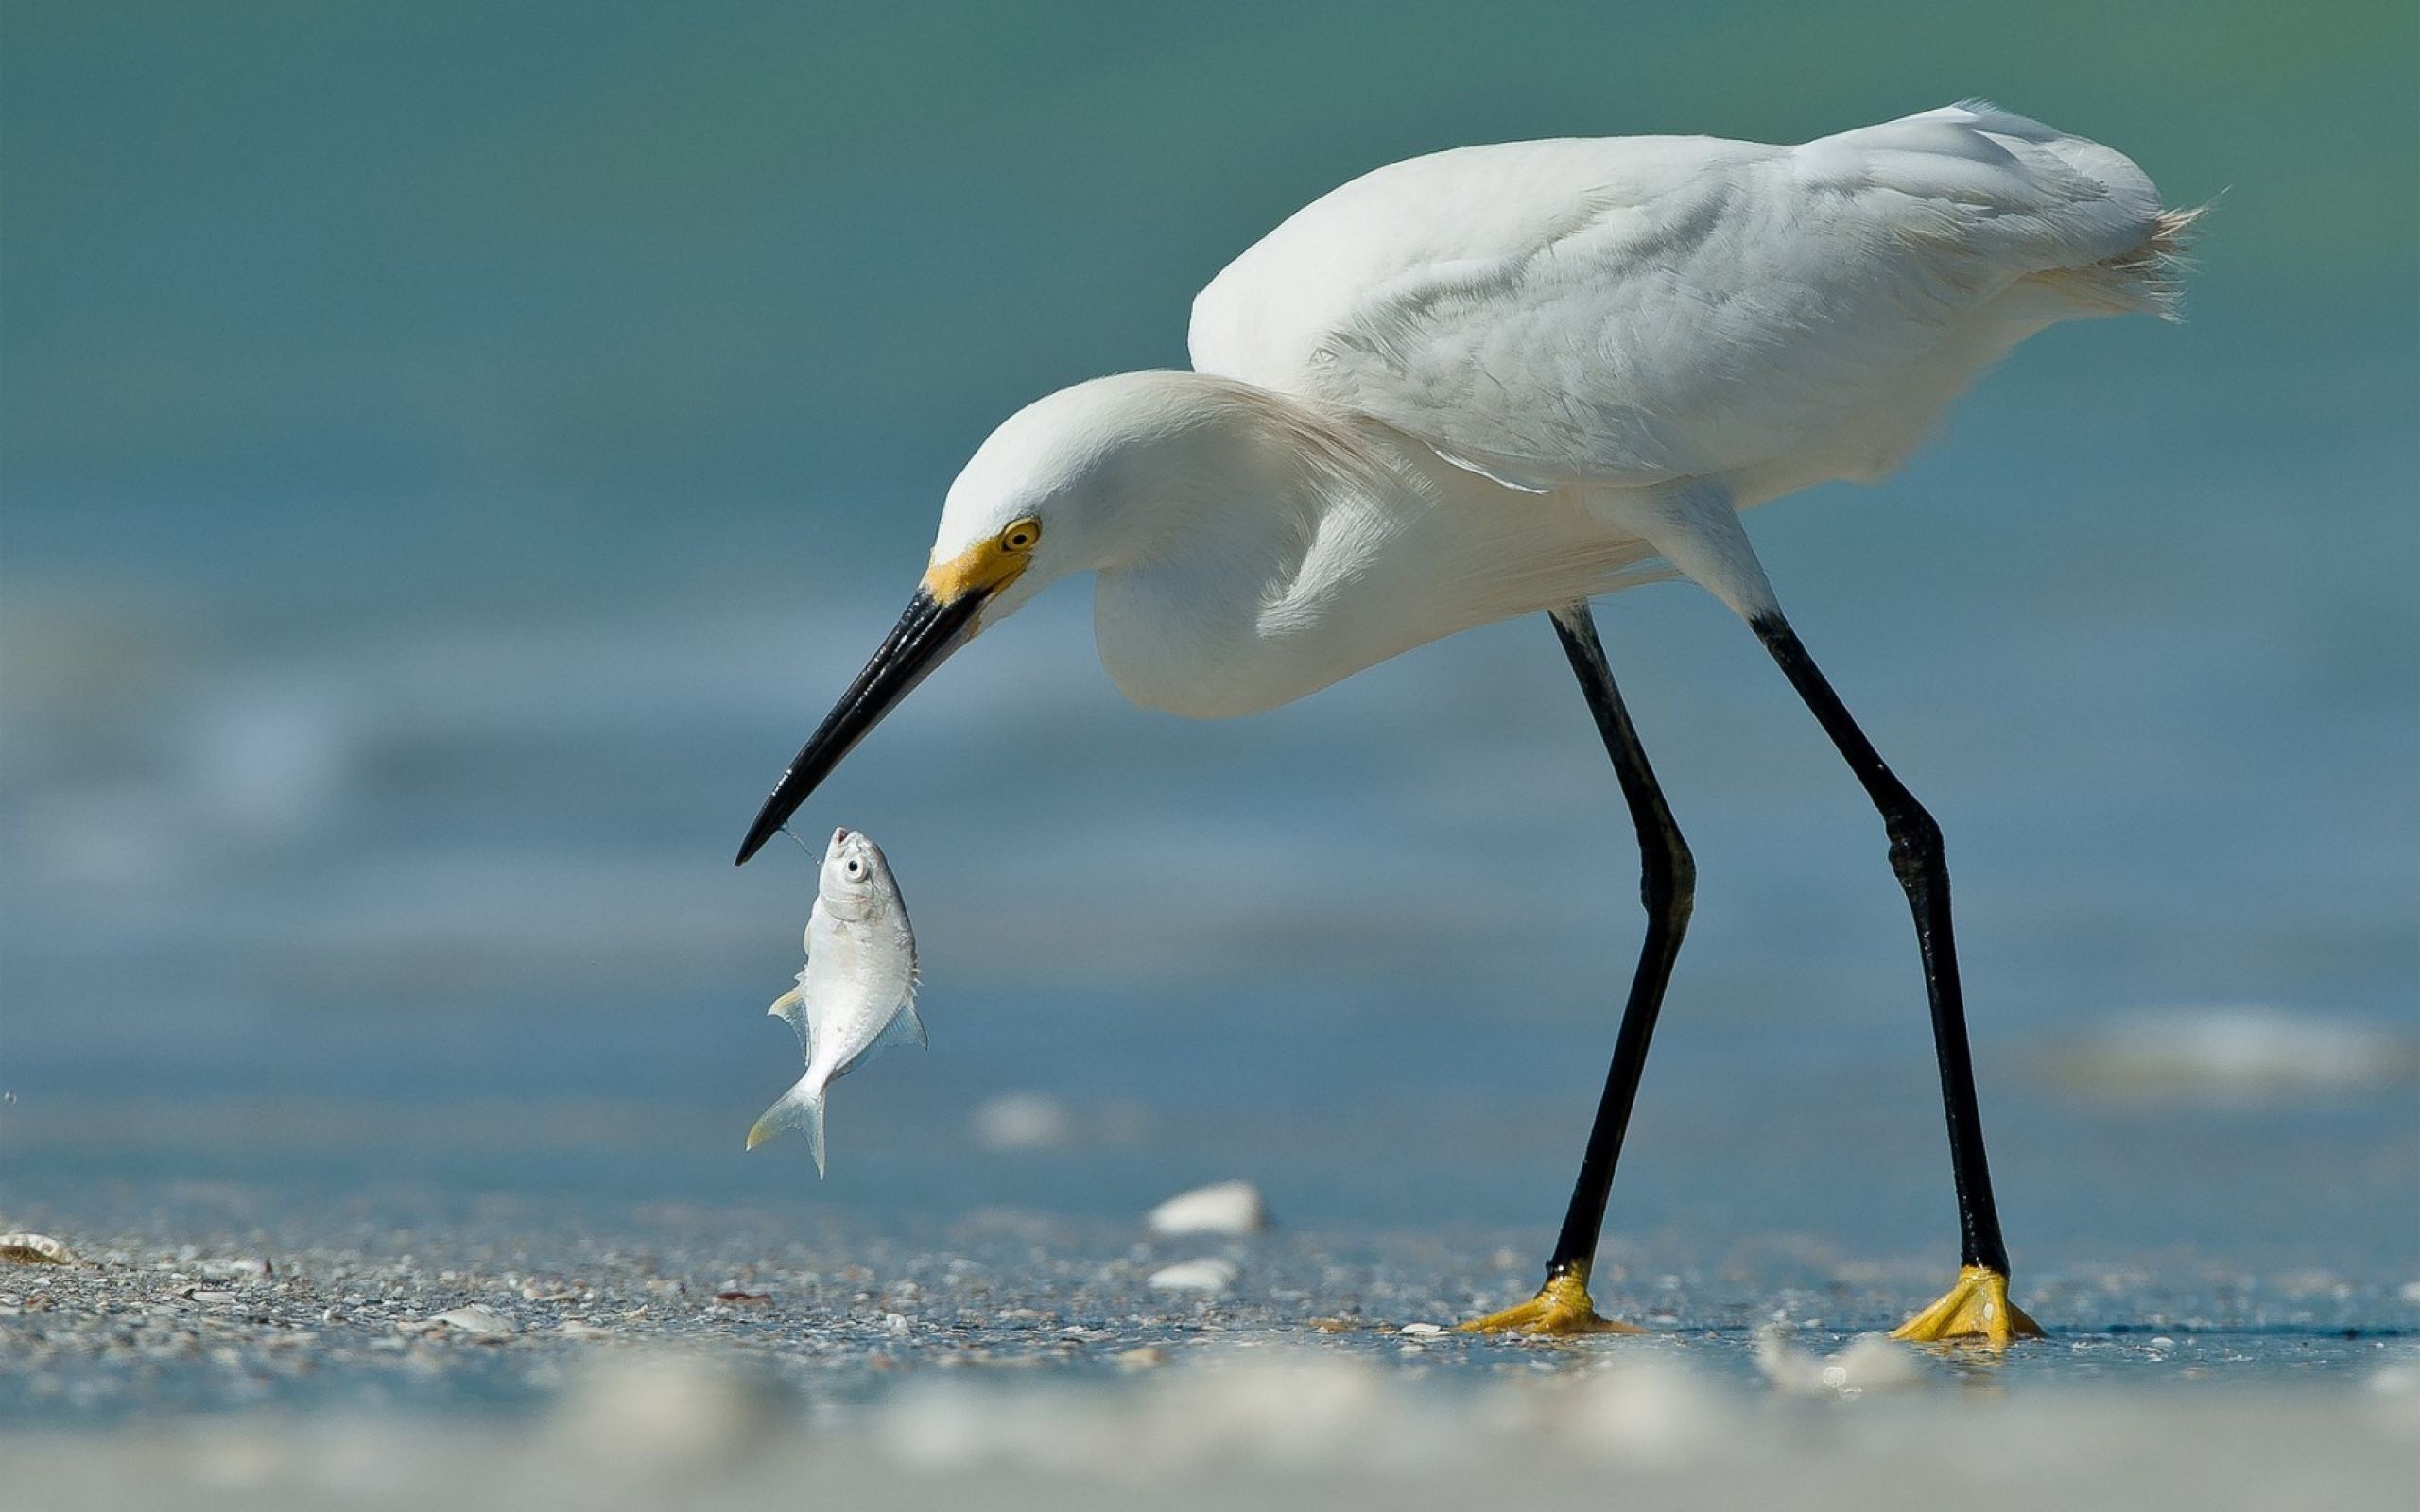 Beach birds, Coastal wildlife, Picturesque moments, Scenic wallpapers, 2560x1600 HD Desktop